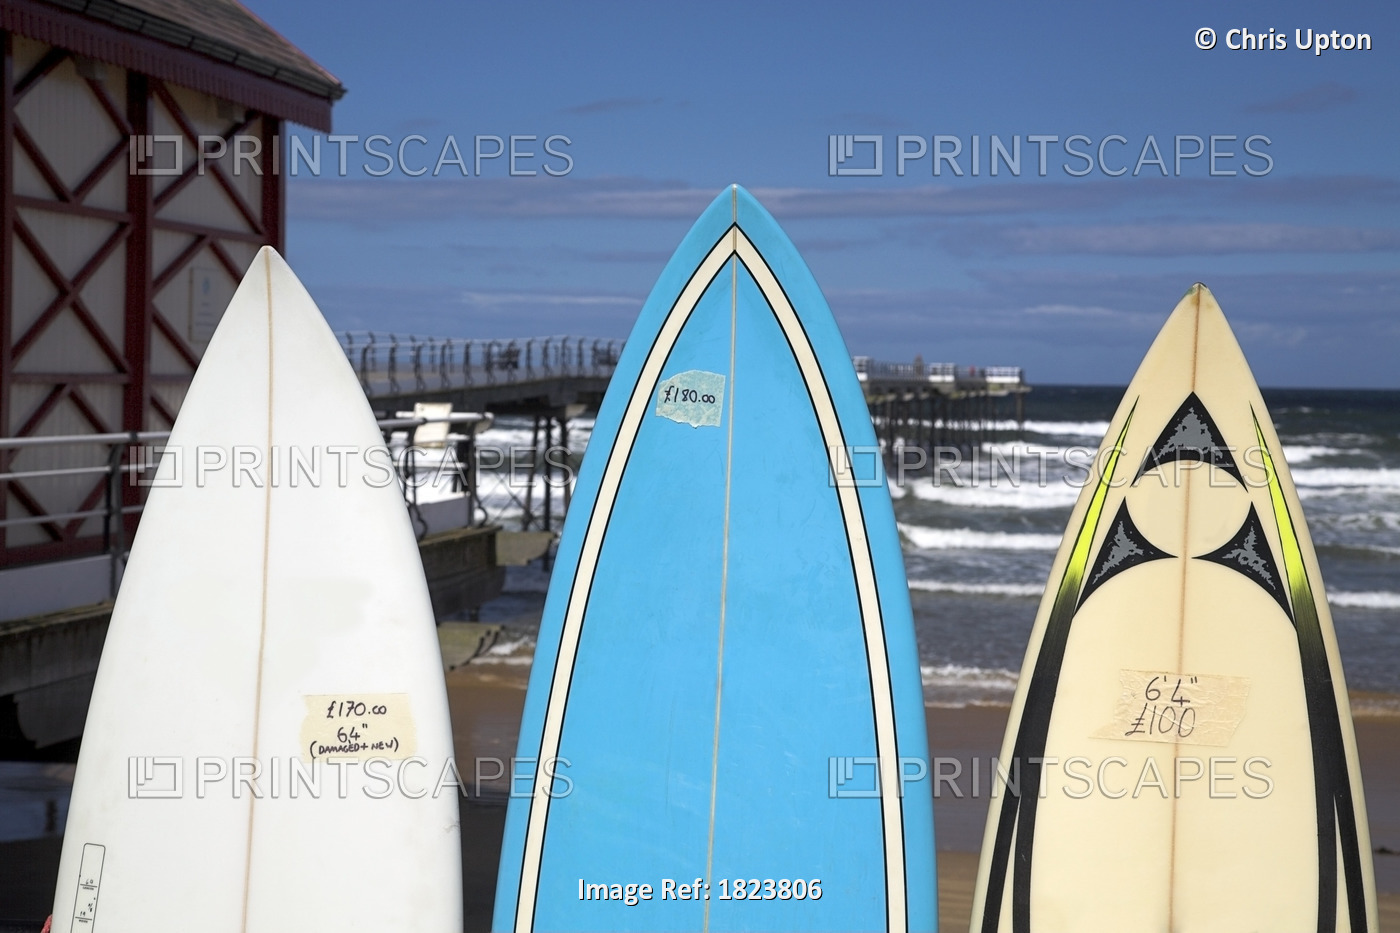 Surfboards For Sale, Saltburn, England